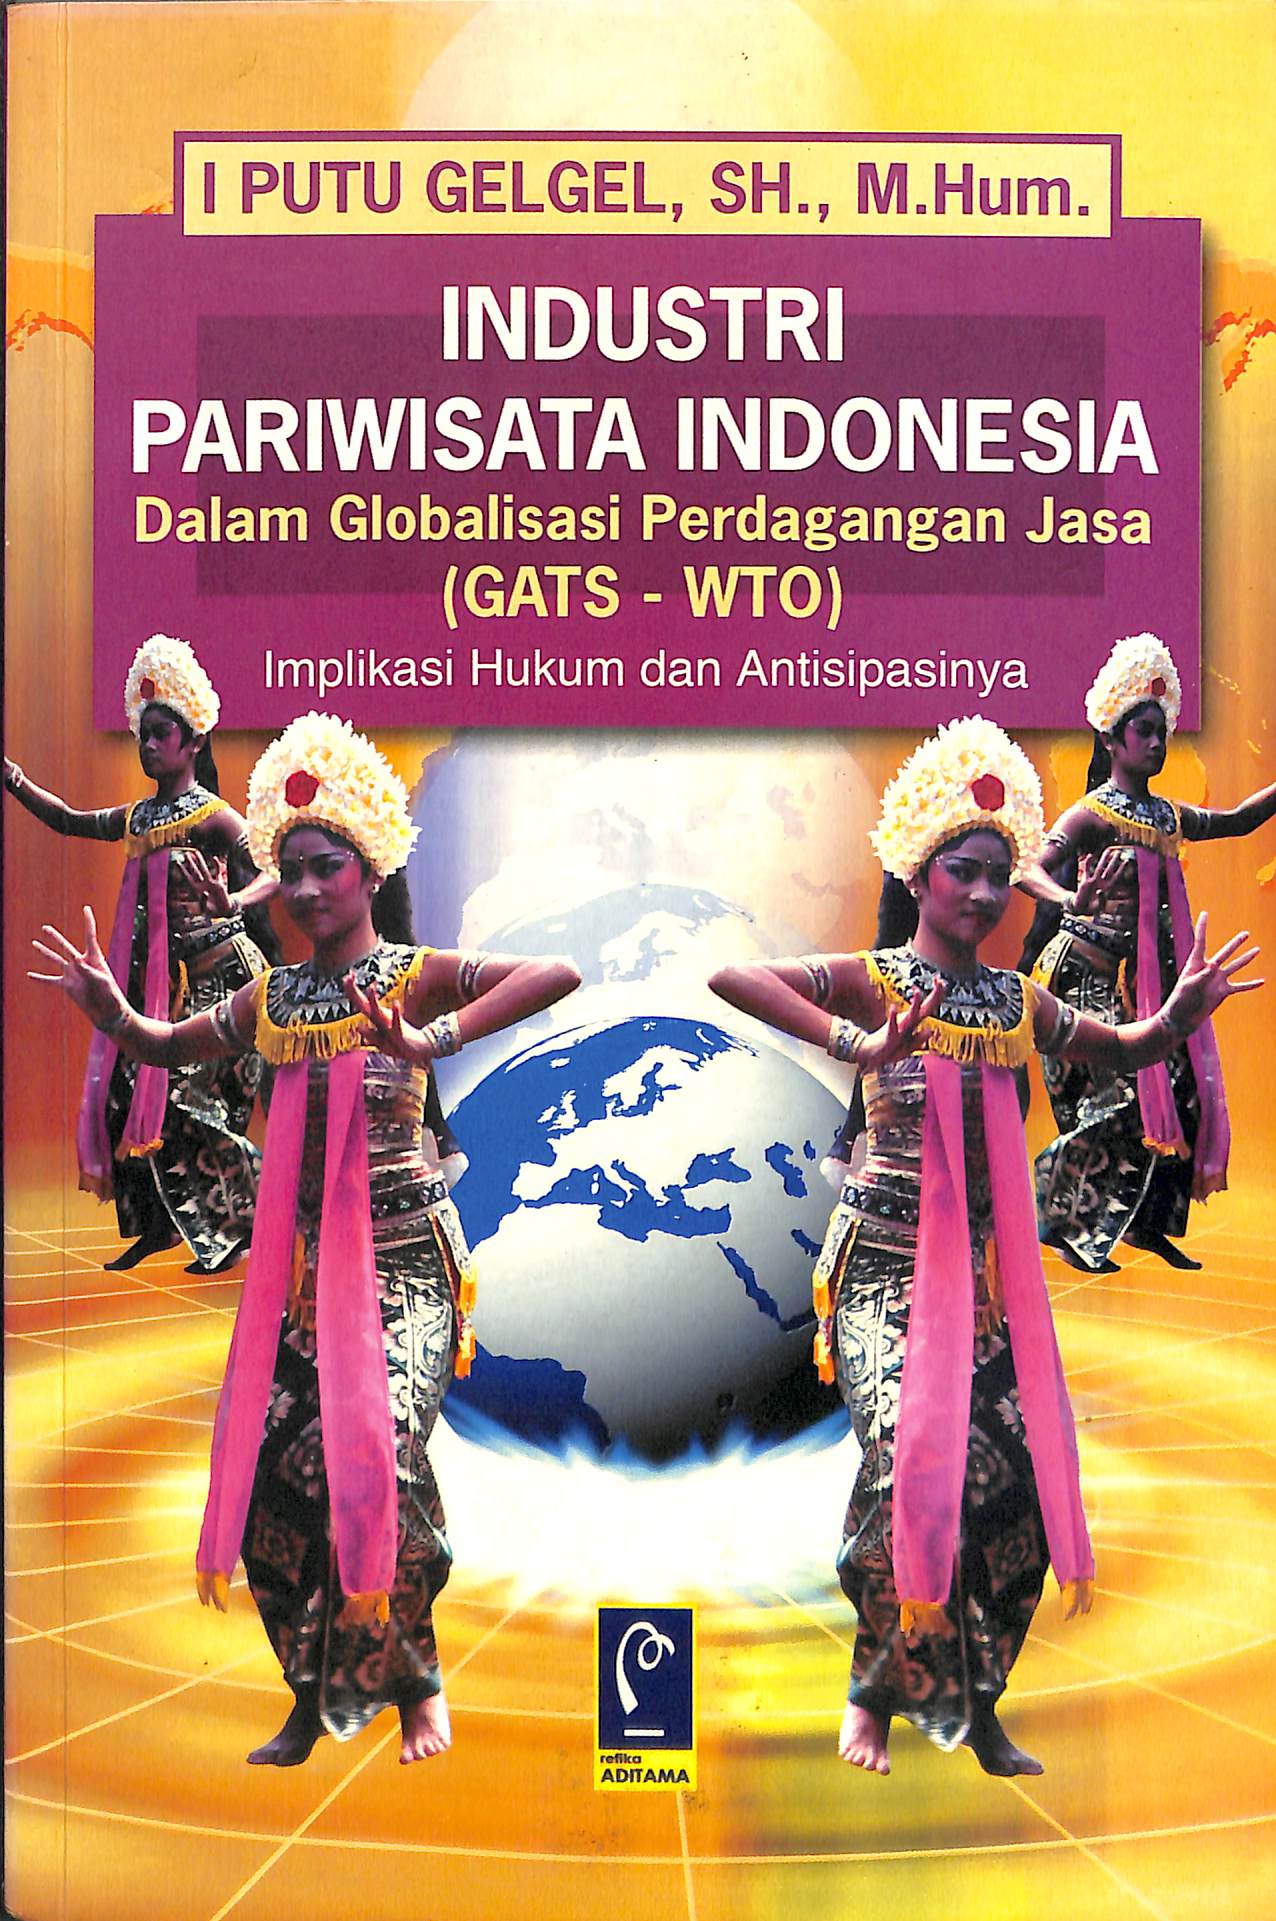 INDUSTRI PARIWISATA INDONESIA DALAM GLOBALISASI PERDAGANGAN JASA (GATS - WTO) IMPLIKASI HUKUM DAN ANTISIPASINYA